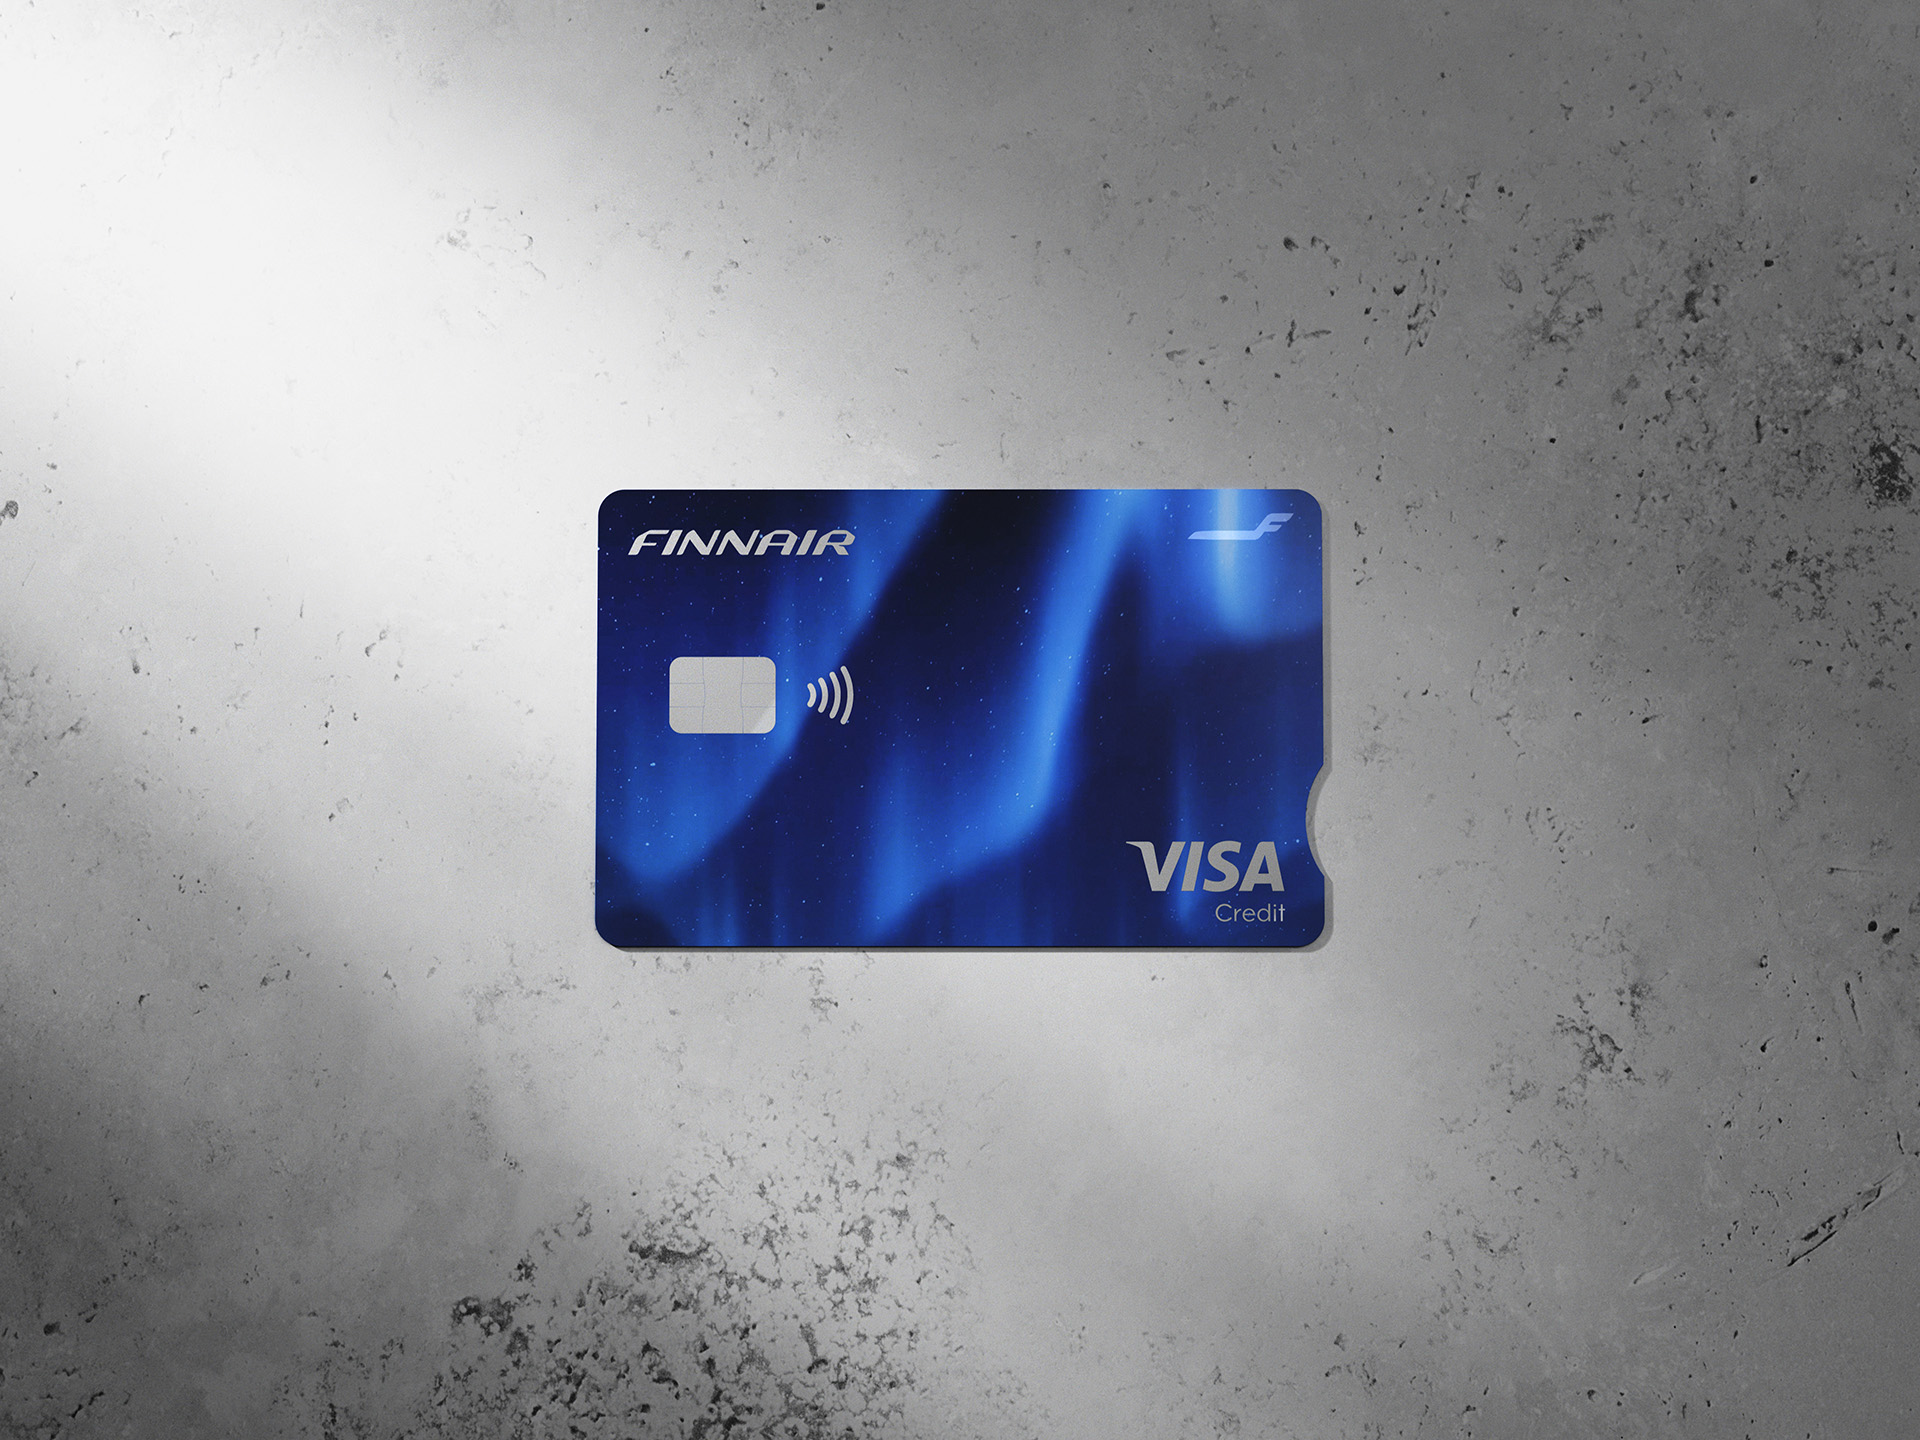 Finnair Visa Credit-kortet från Aktia